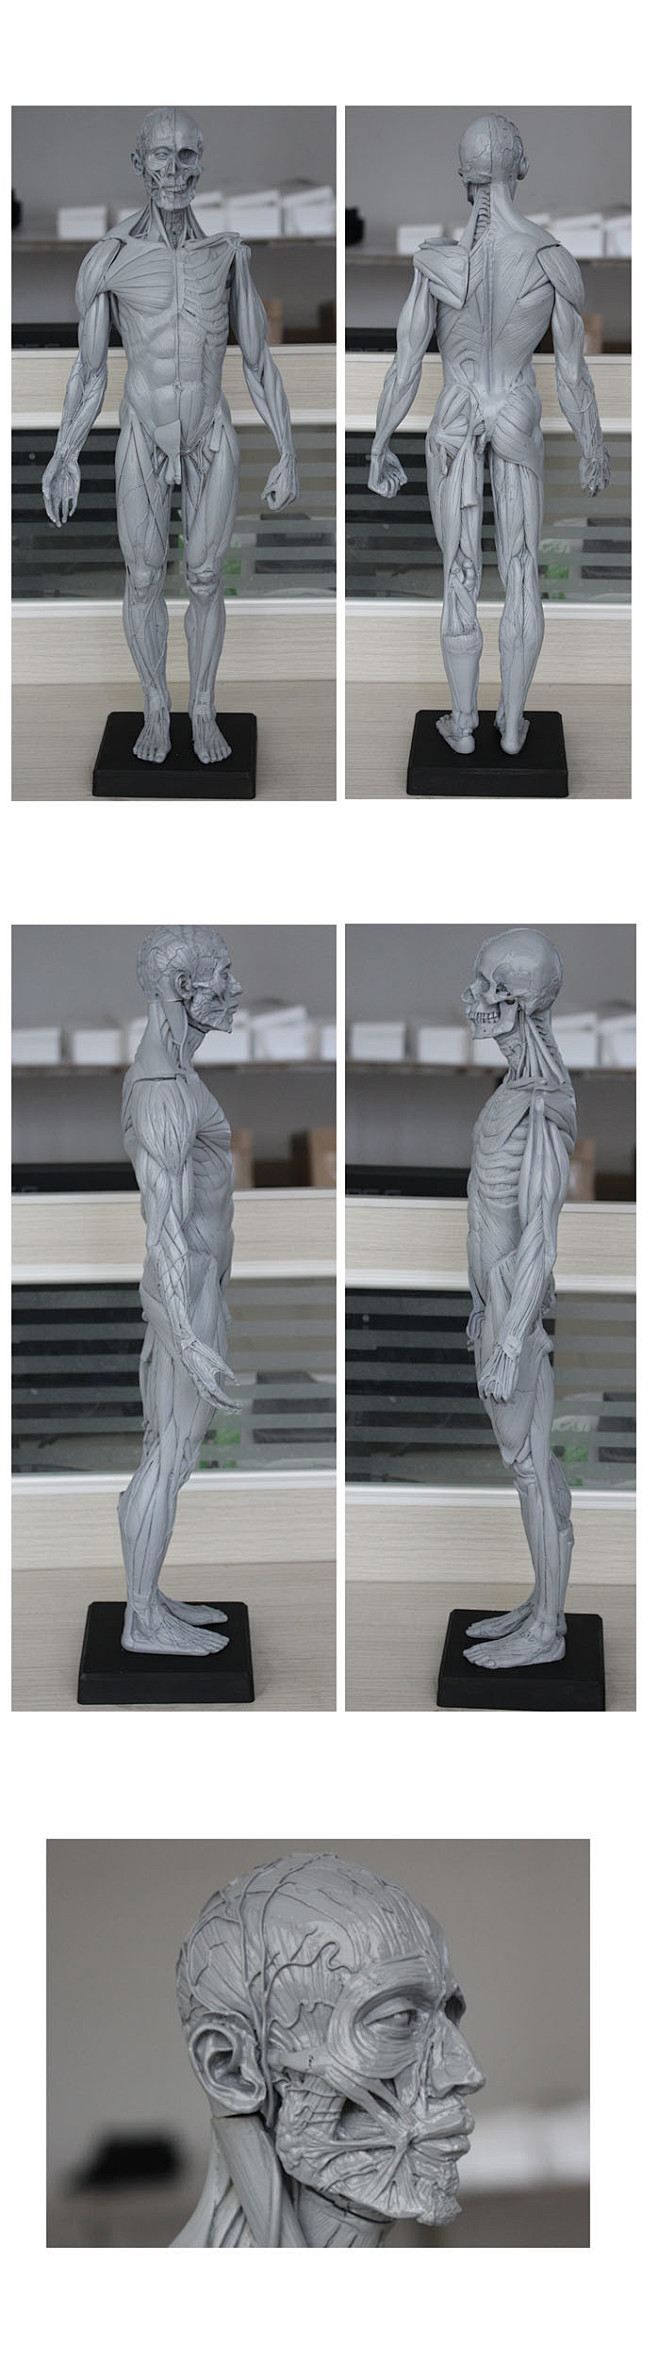 com 60cm艺用人体模型 肌肉解剖 人体骨骼结构模型 美术雕塑cg教学用